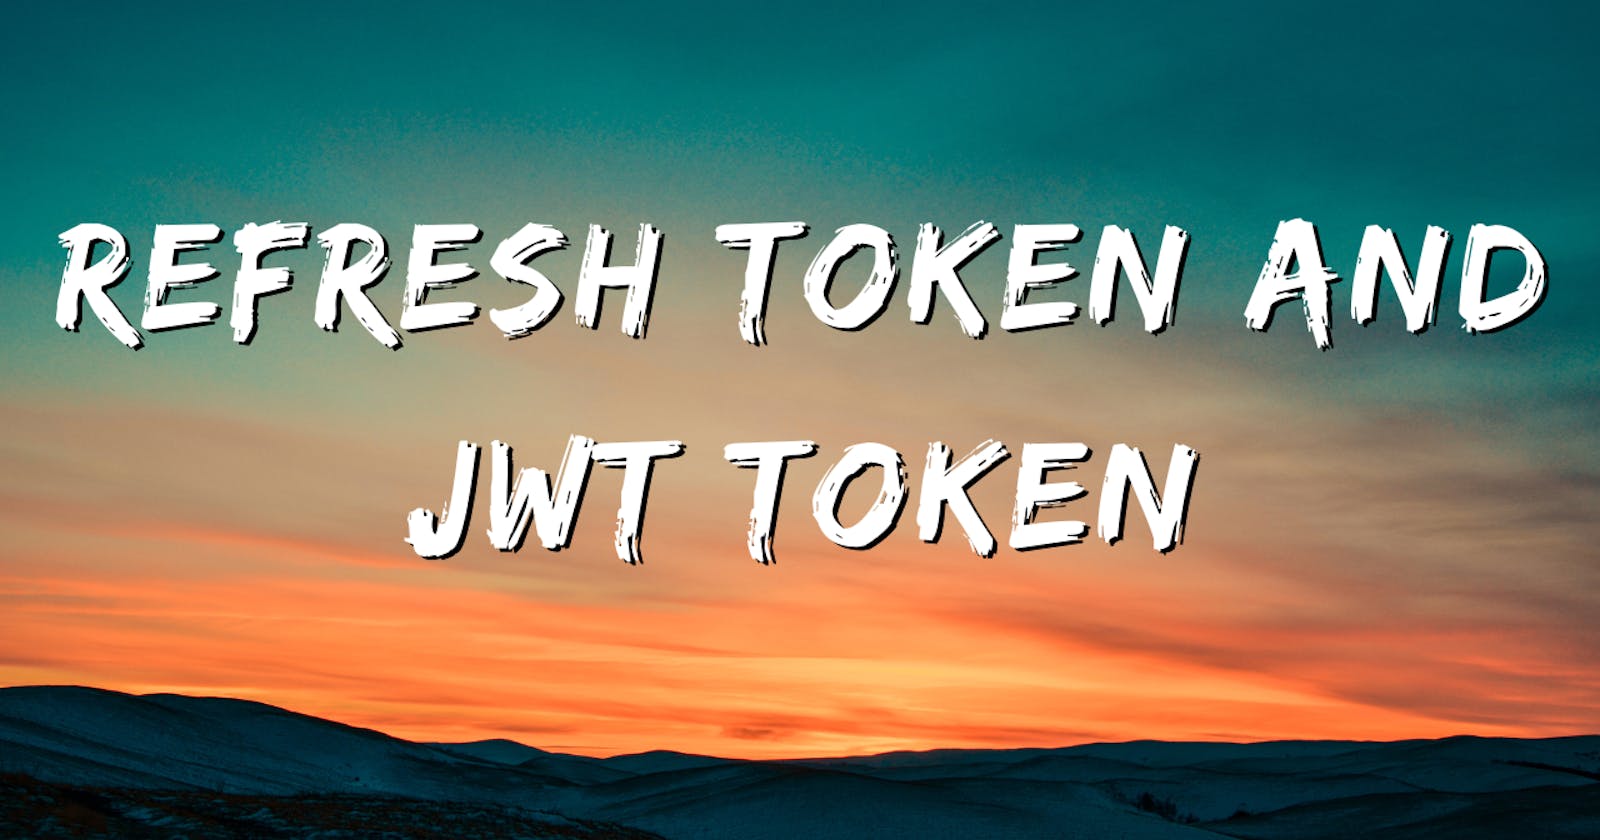 Refresh token and JWT token